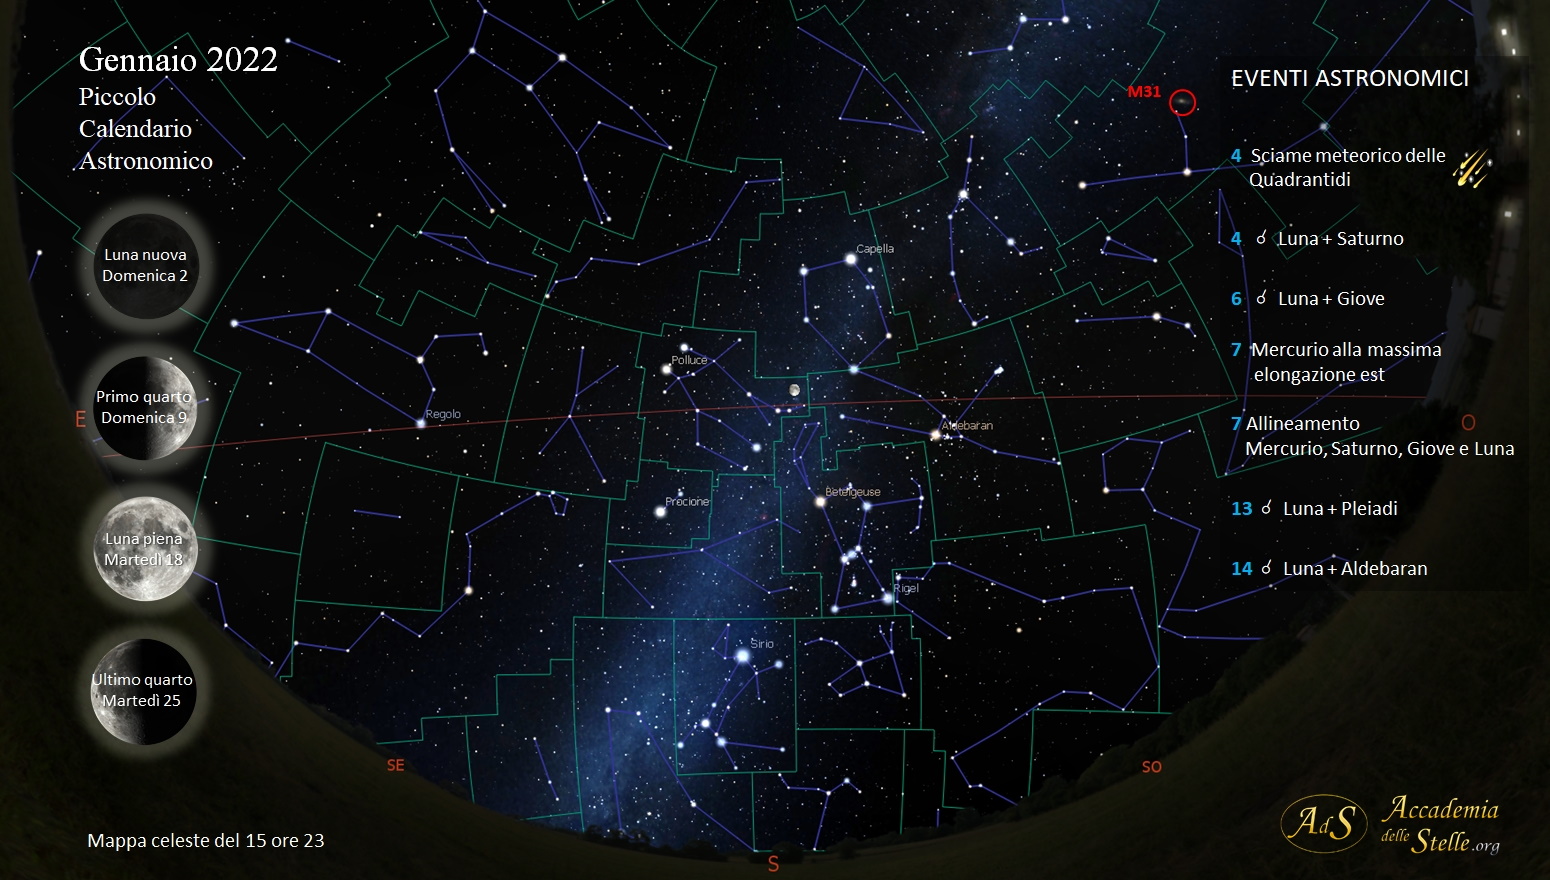 La mappa mostra il cielo del 15 gennaio alle ore 23, realizzata col software Stellarium